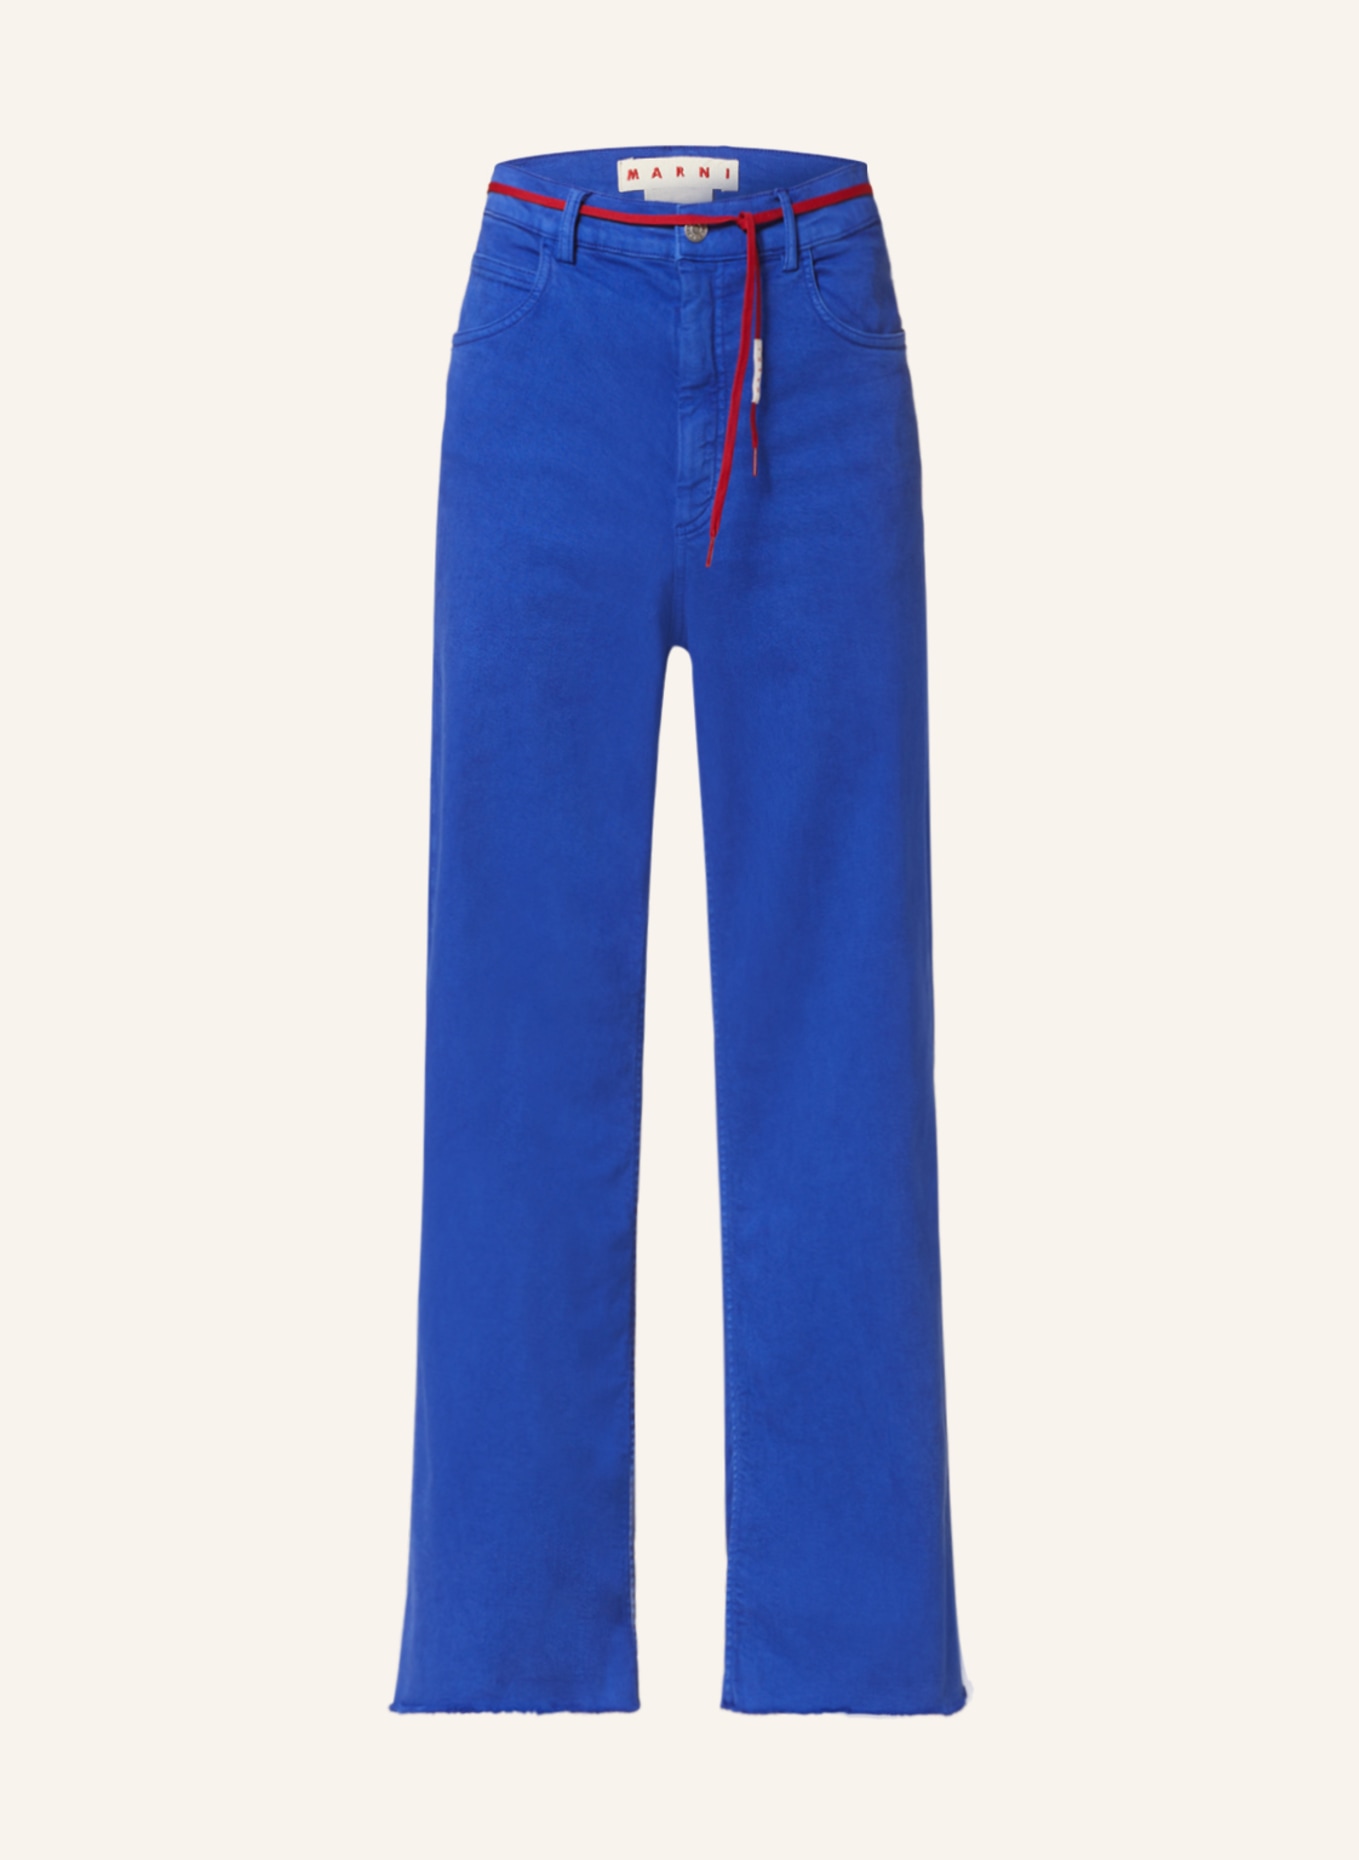 MARNI Jeans regular fit, Color: BLUE (Image 1)